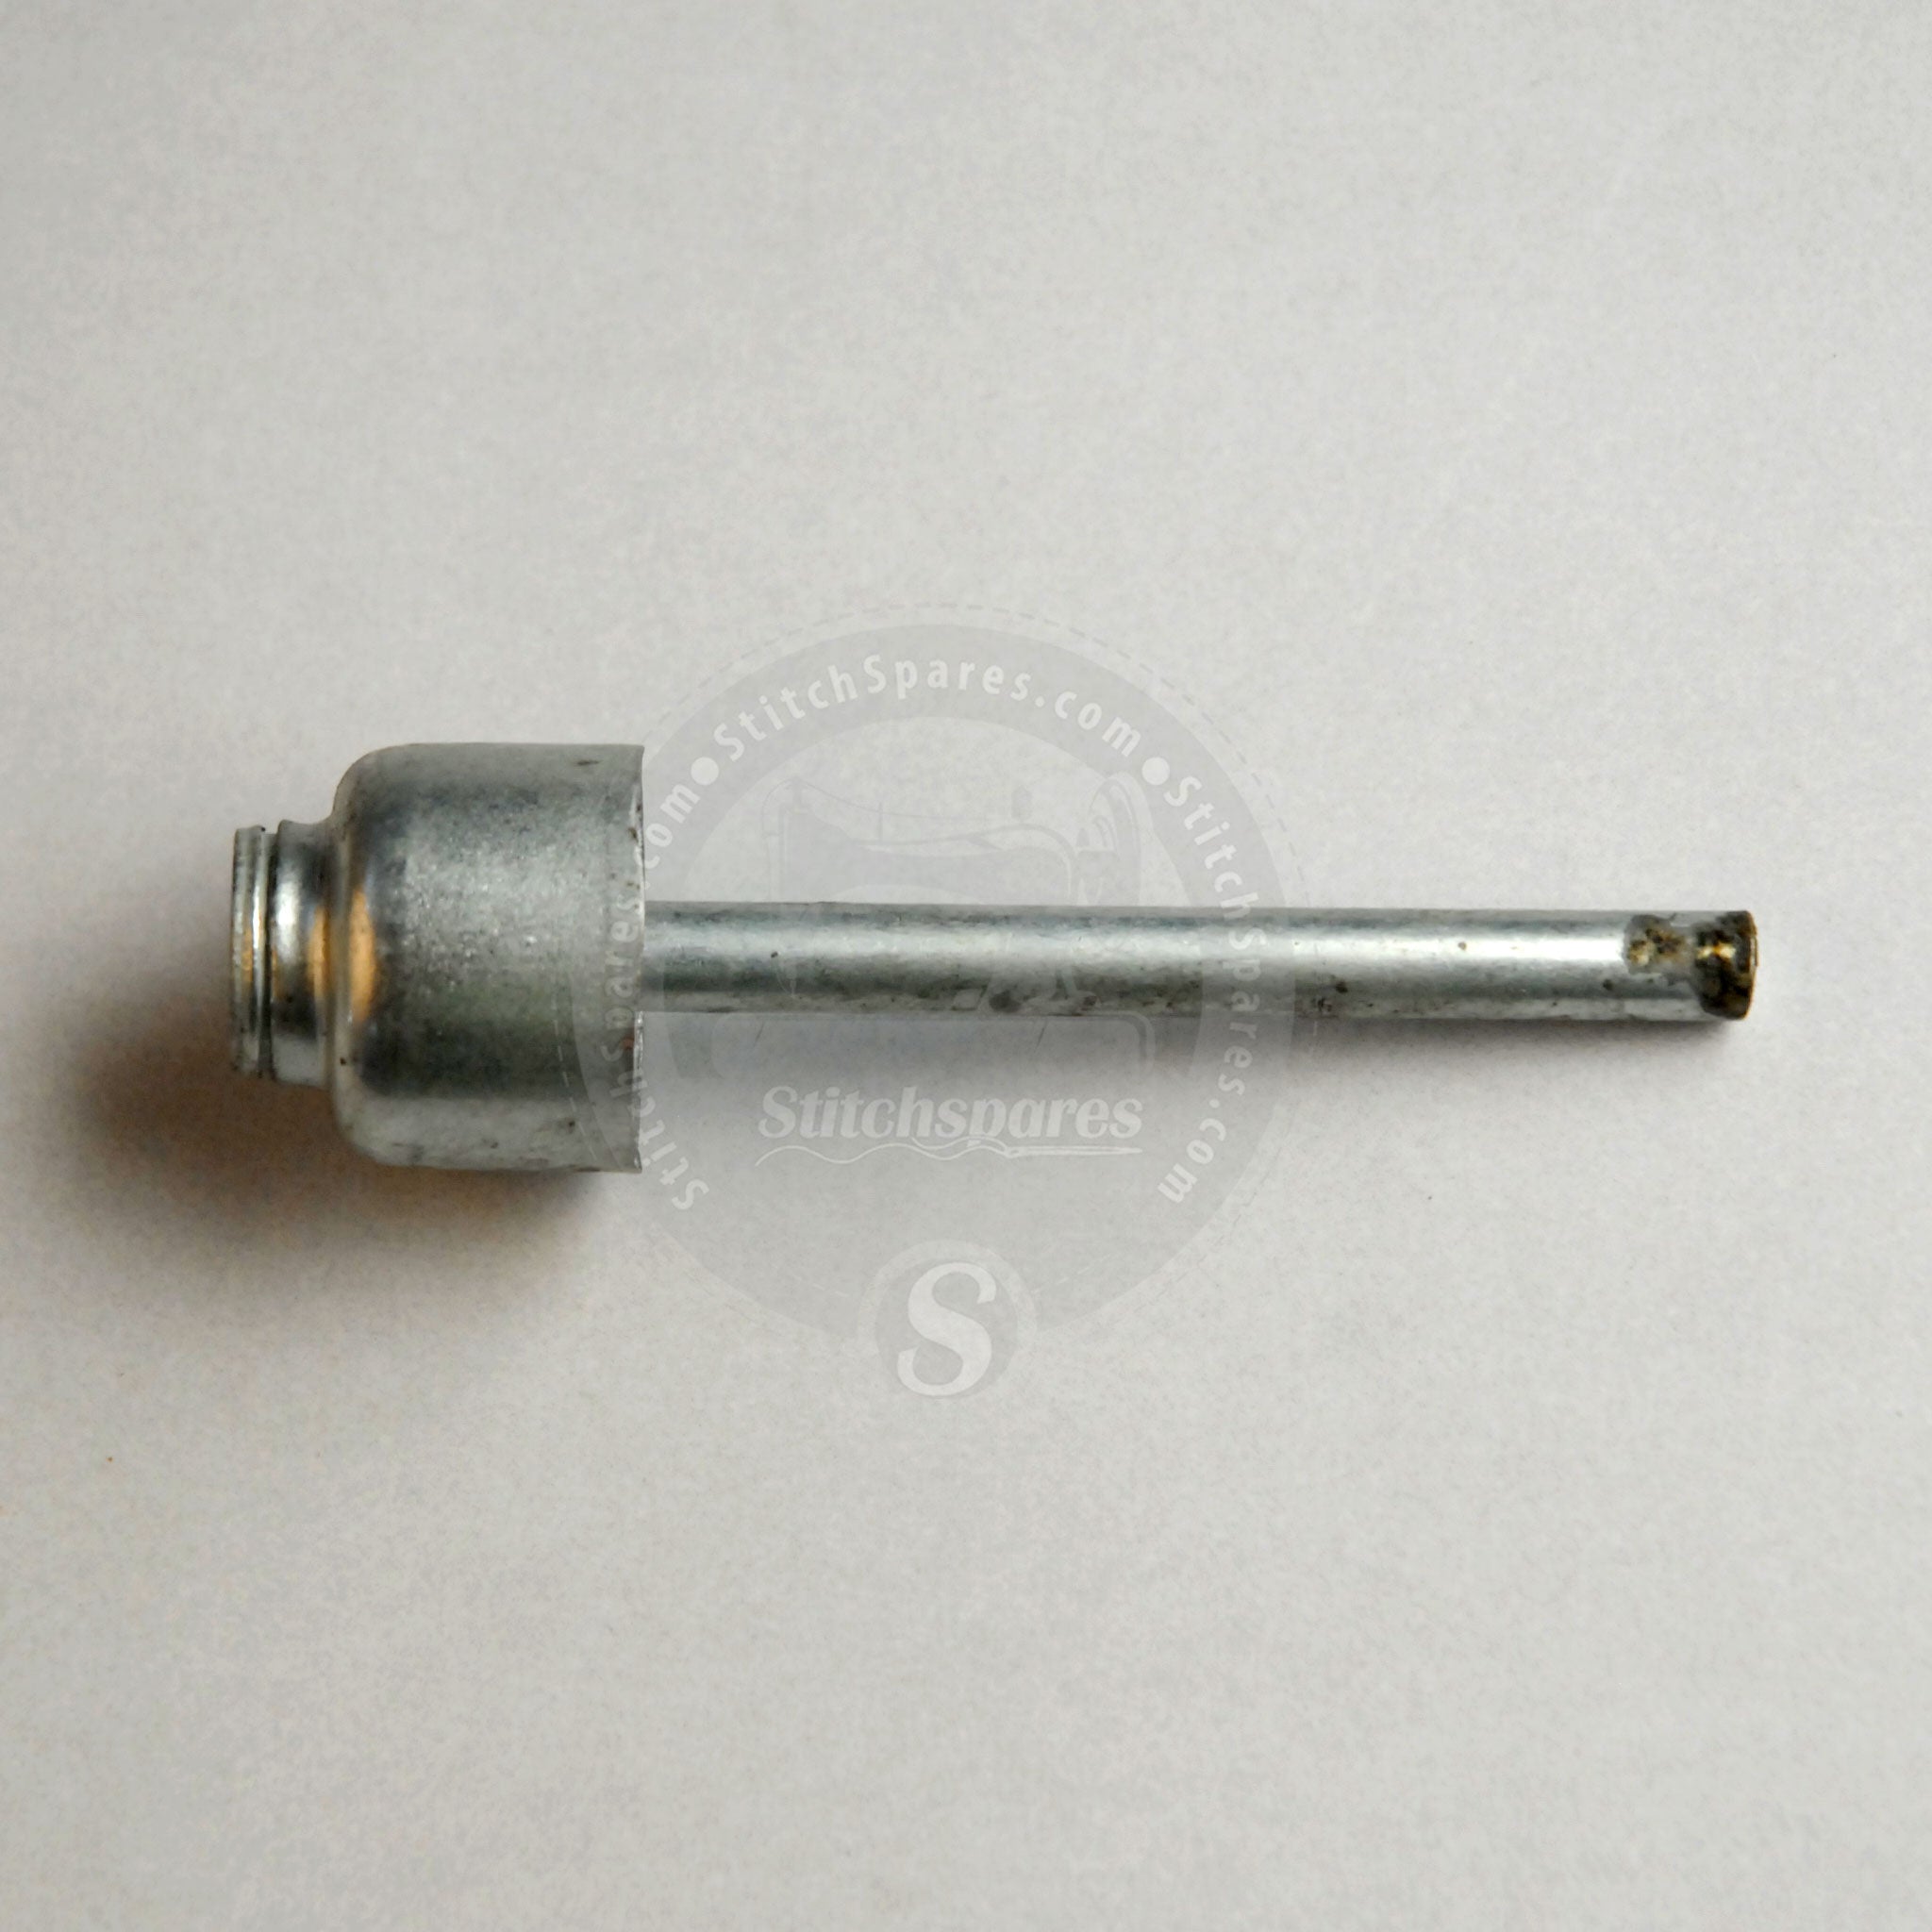 229-31703 Rodilla Lifter (Steel) Juki Single Needle Lock-Stitch Machine